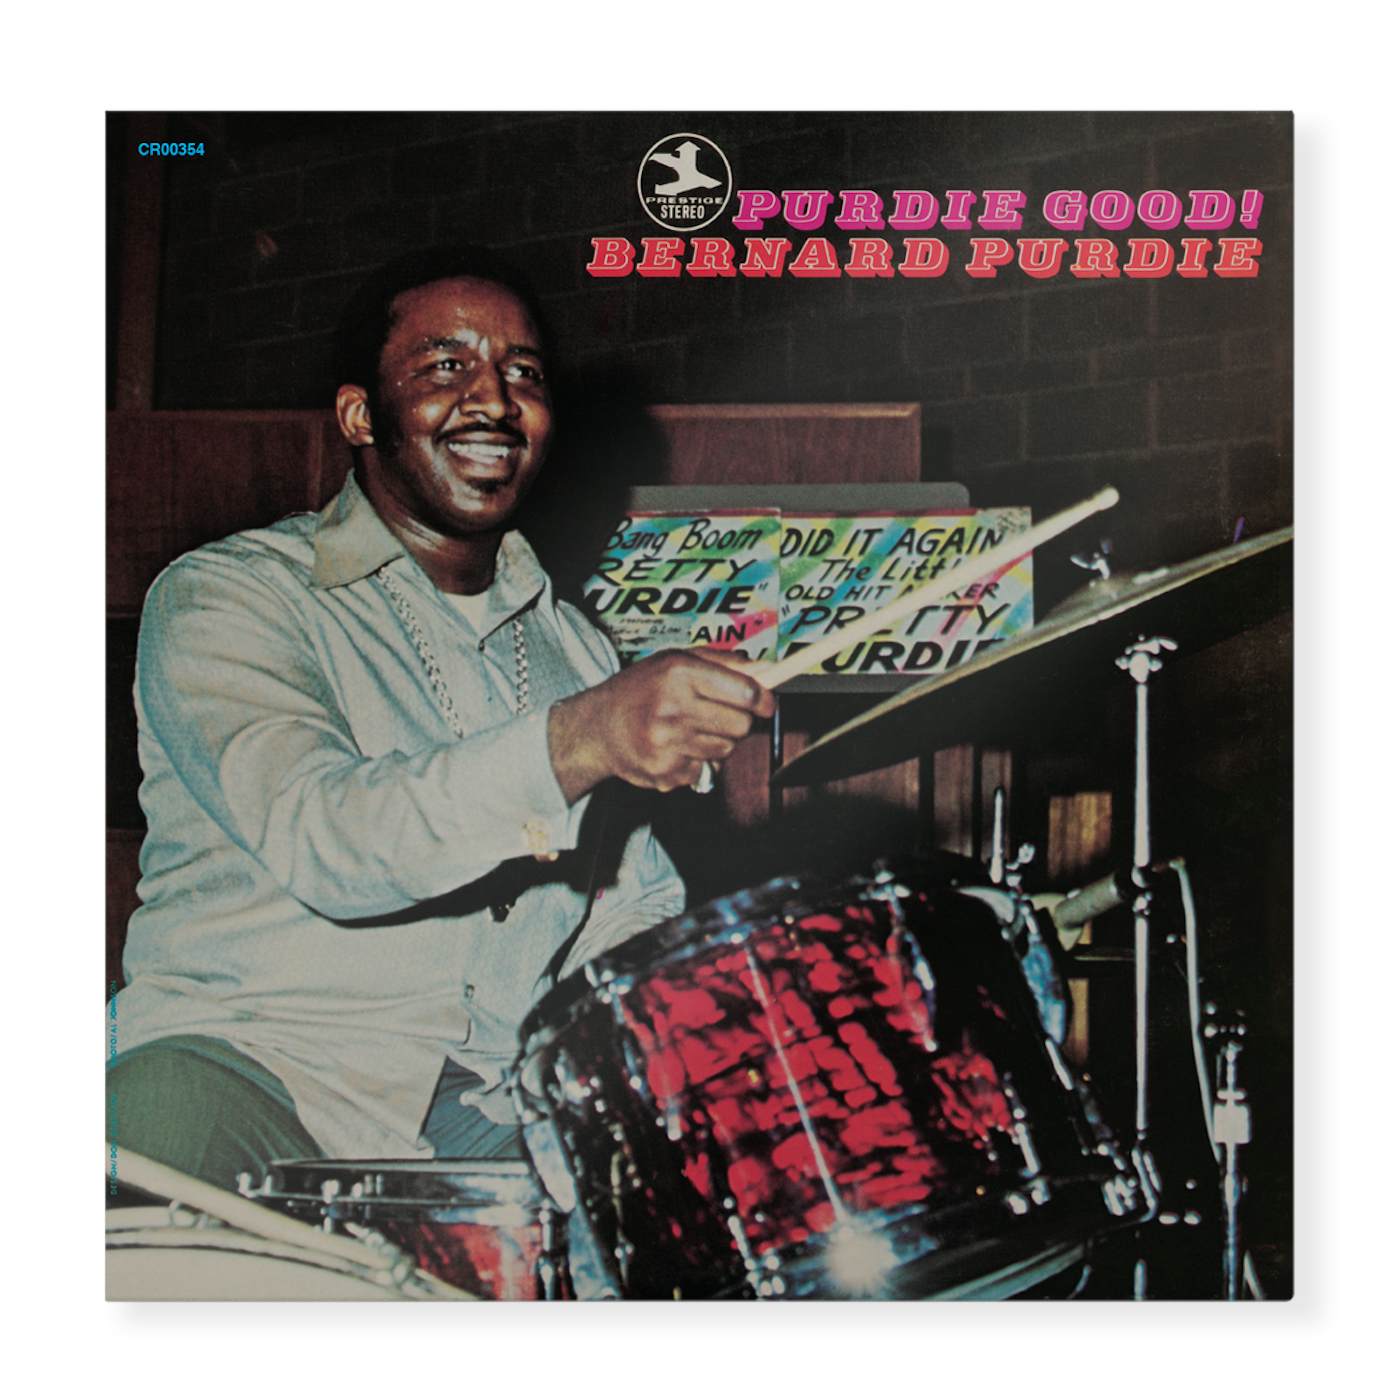 Bernard Purdie Purdie Good! (180g LP) (Vinyl)